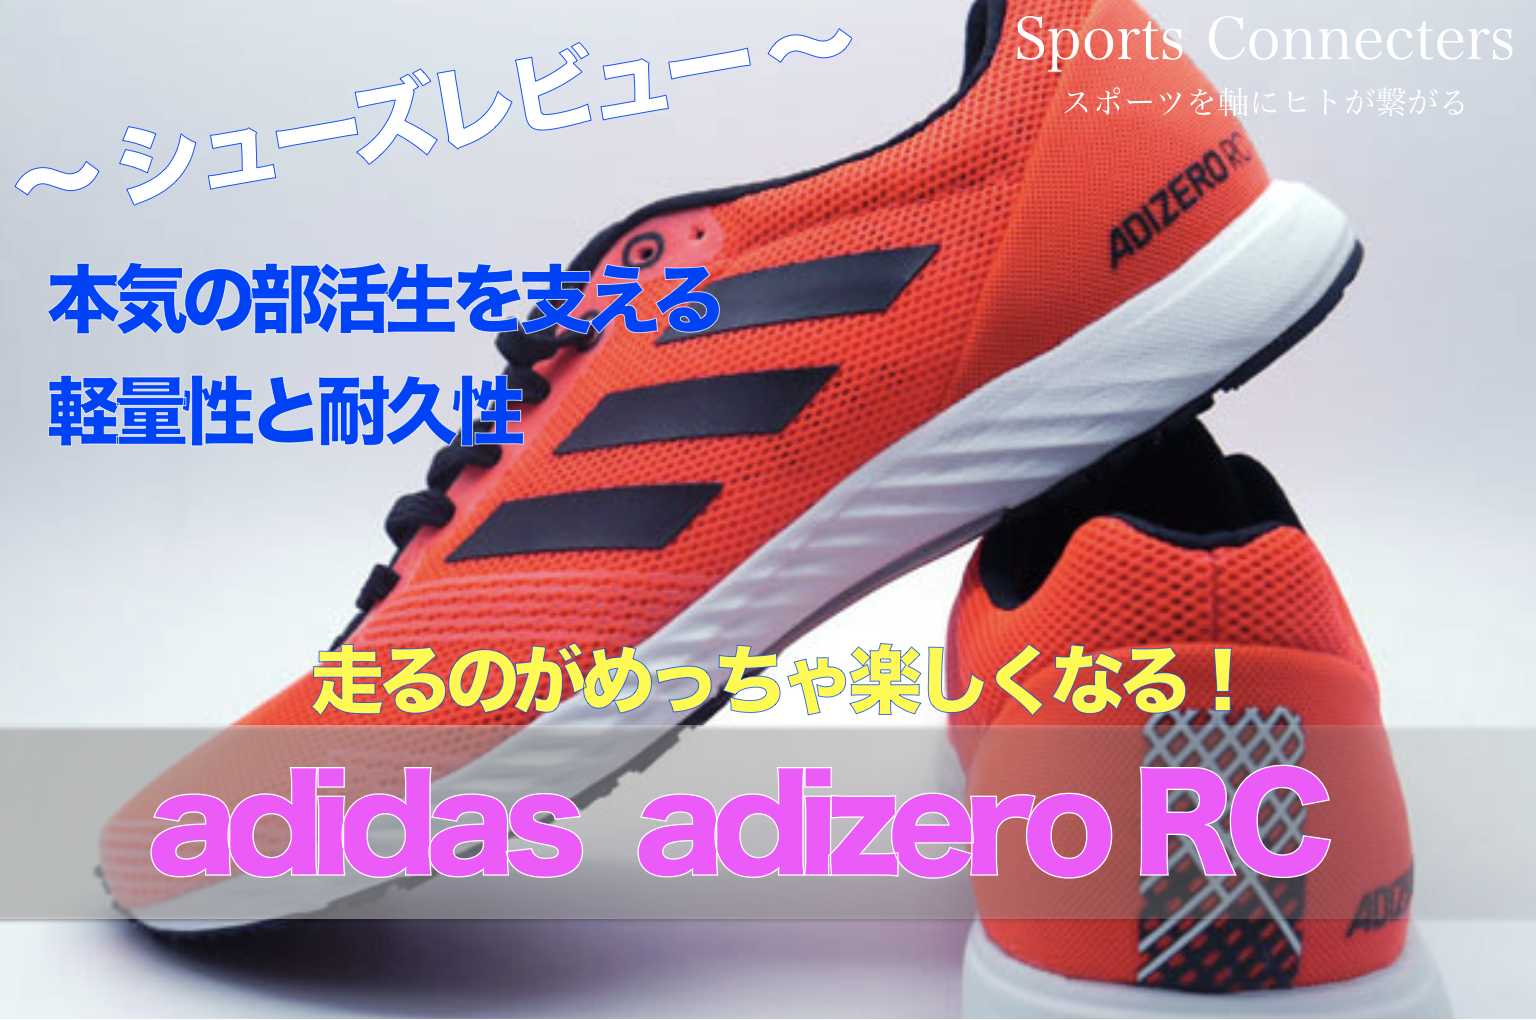 走るのがめっちゃ楽しくなる 部活生のために作られた傑作品 Adidas アディゼロrc 評価 レビュー Sports Connecters